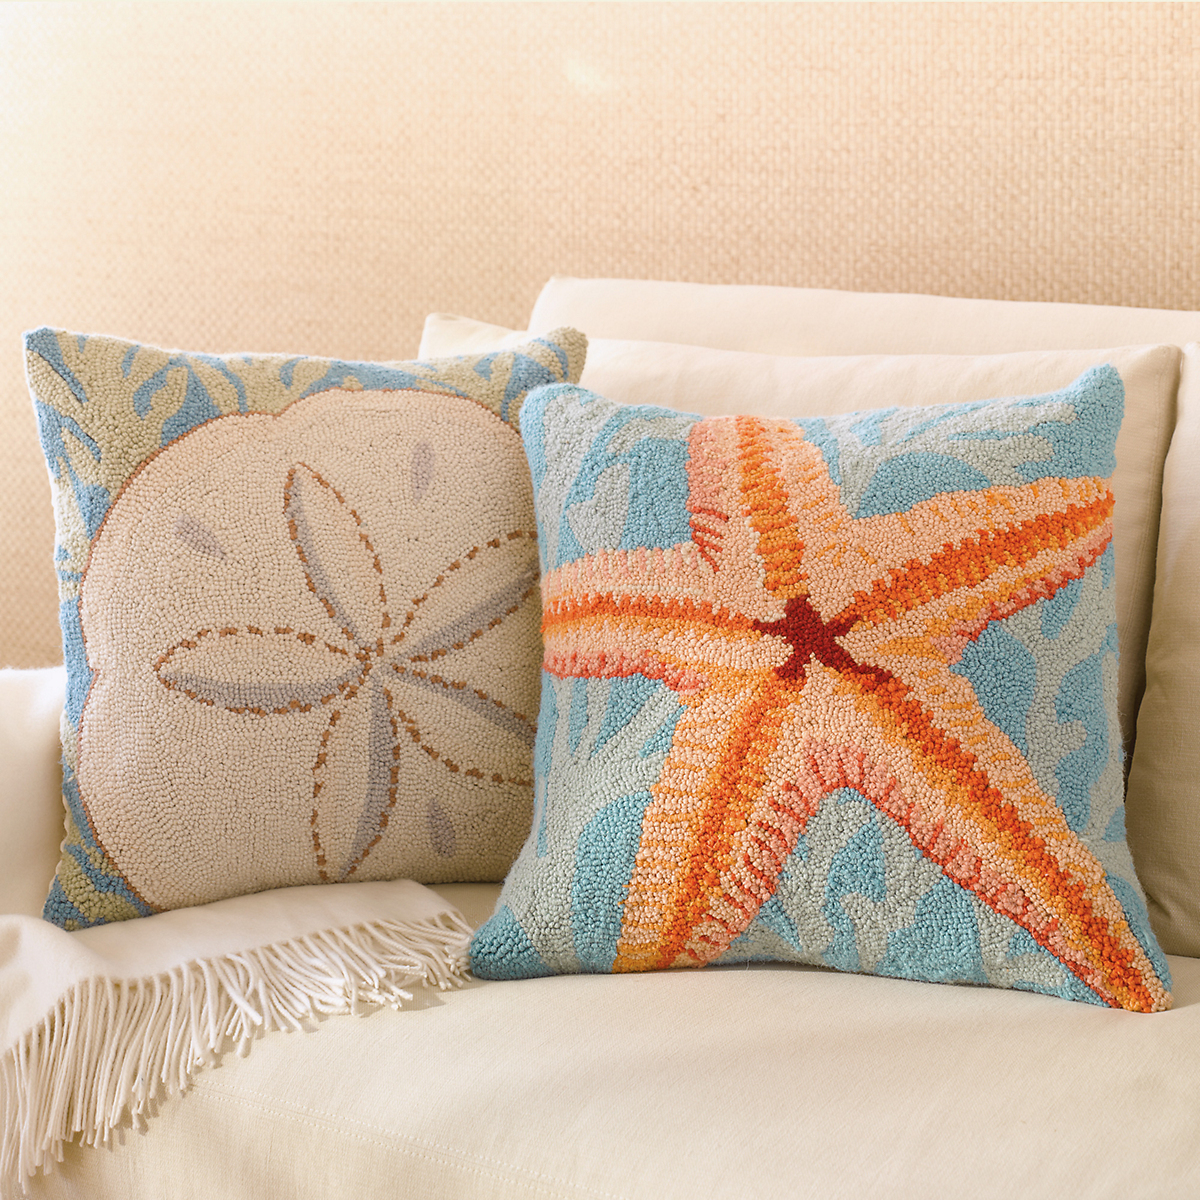 Sand Dollar & Starfish Pillows | Gump's